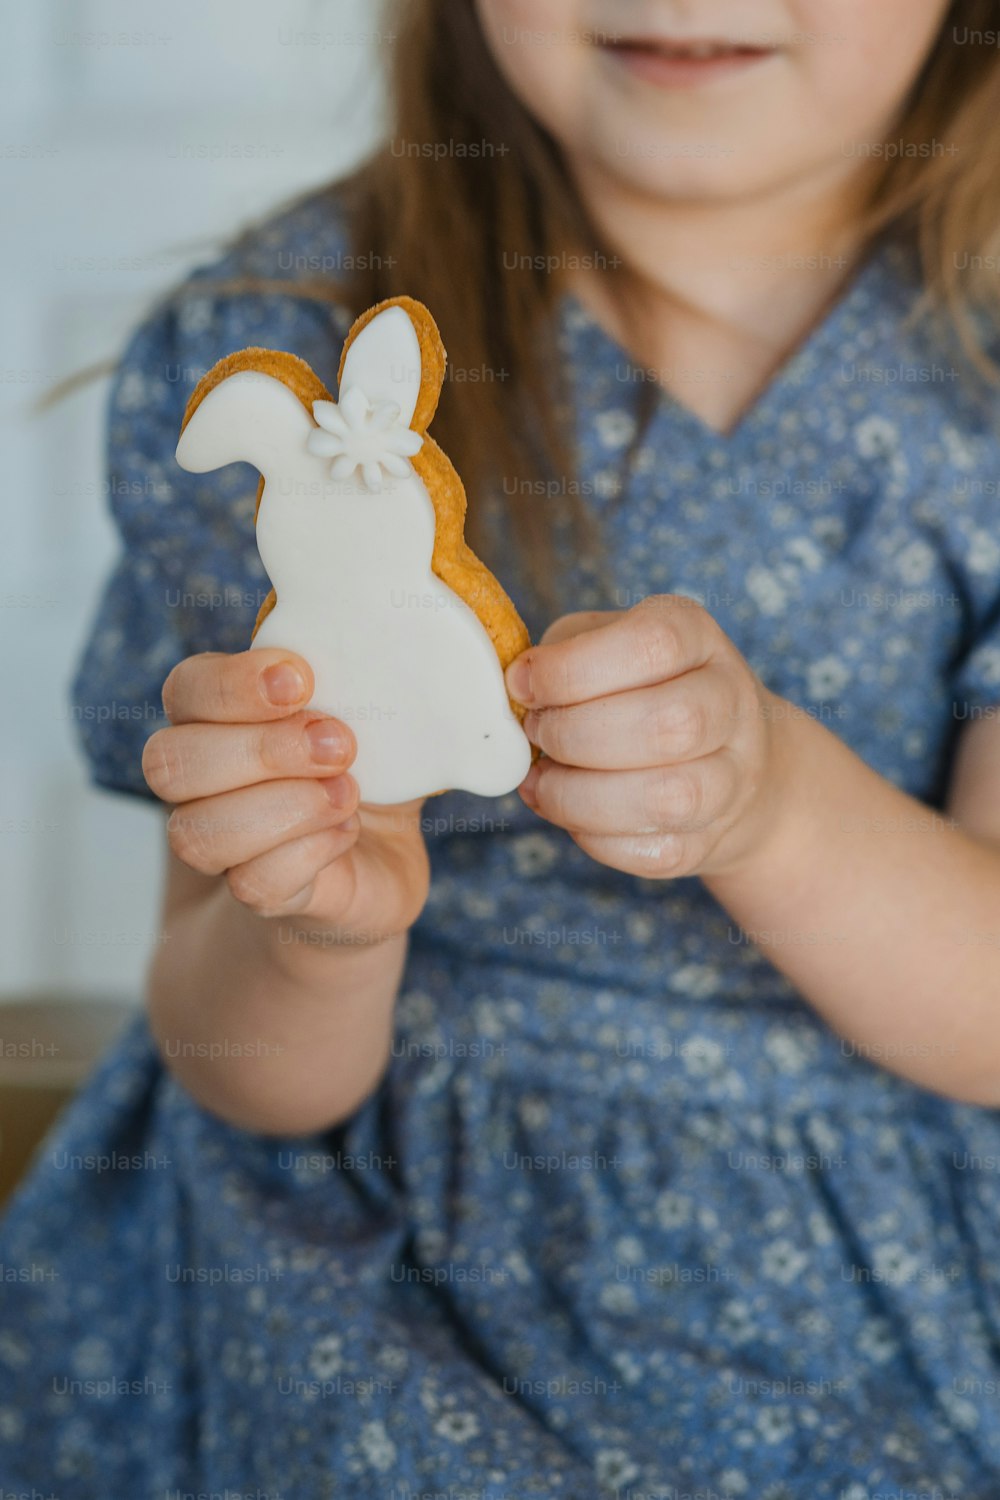 토끼 모양의 쿠키를 들고 있는 어린 소녀